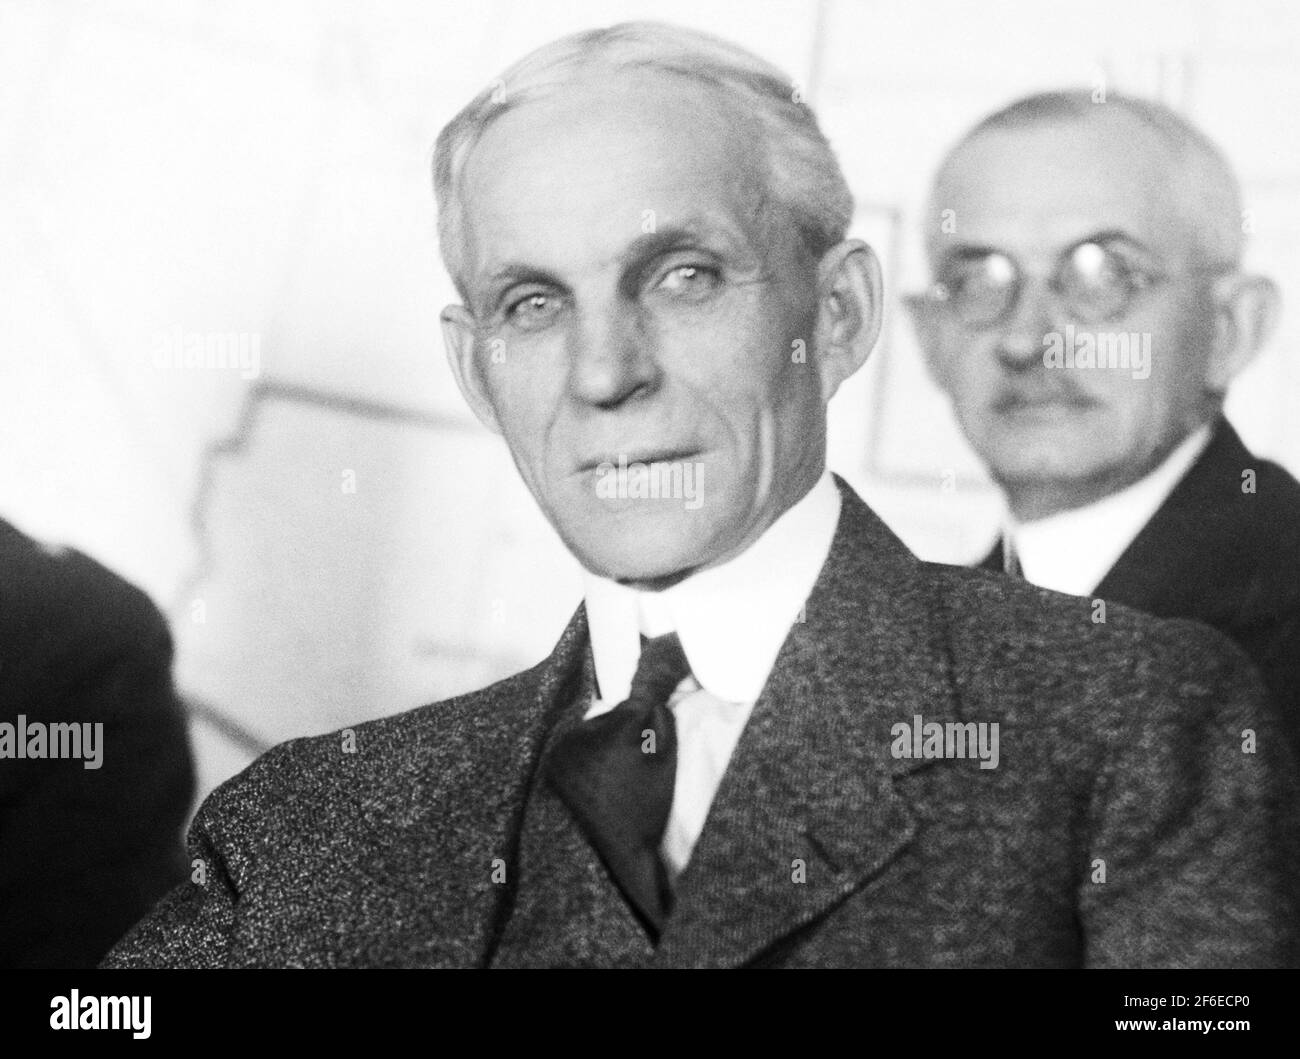 Photo d'époque de l'industriel américain et magnat des affaires Henry Ford (1863 – 1947) – fondateur de la Ford Motor Company. Photo de Harris & Ewing prise en 1922. Banque D'Images